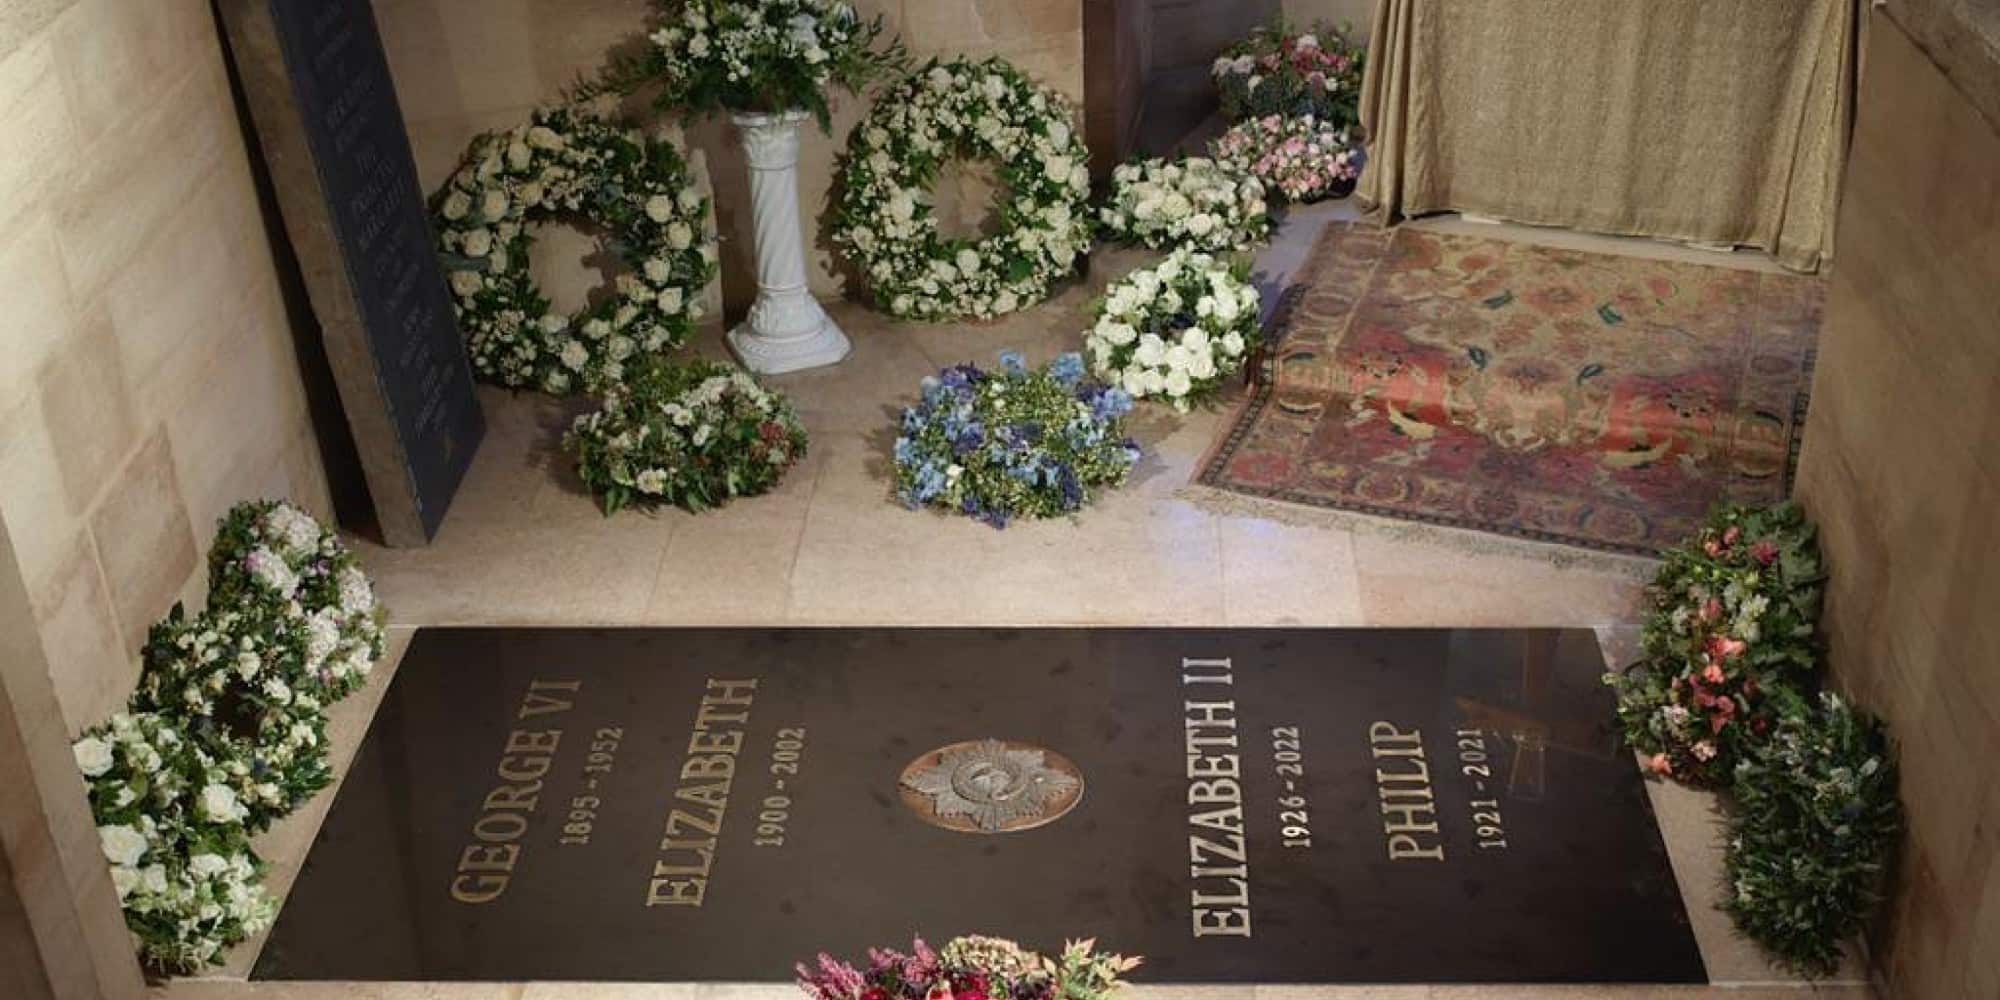 βασίλισσα Ελισάβετ - Ο τάφος της βασίλισσας Ελισάβετ